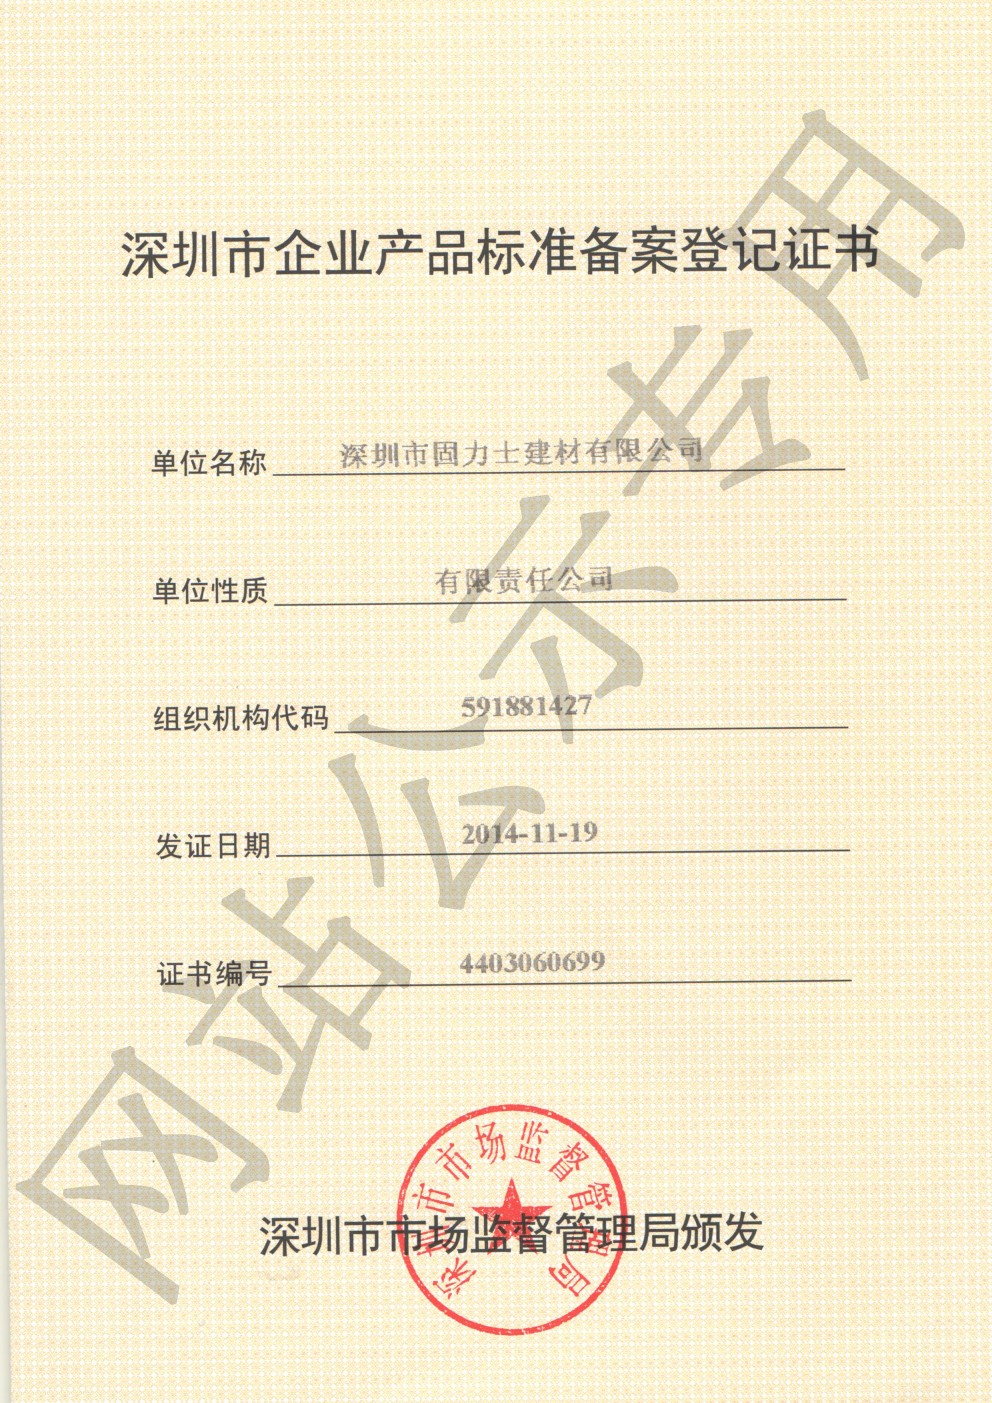 略阳企业产品标准登记证书